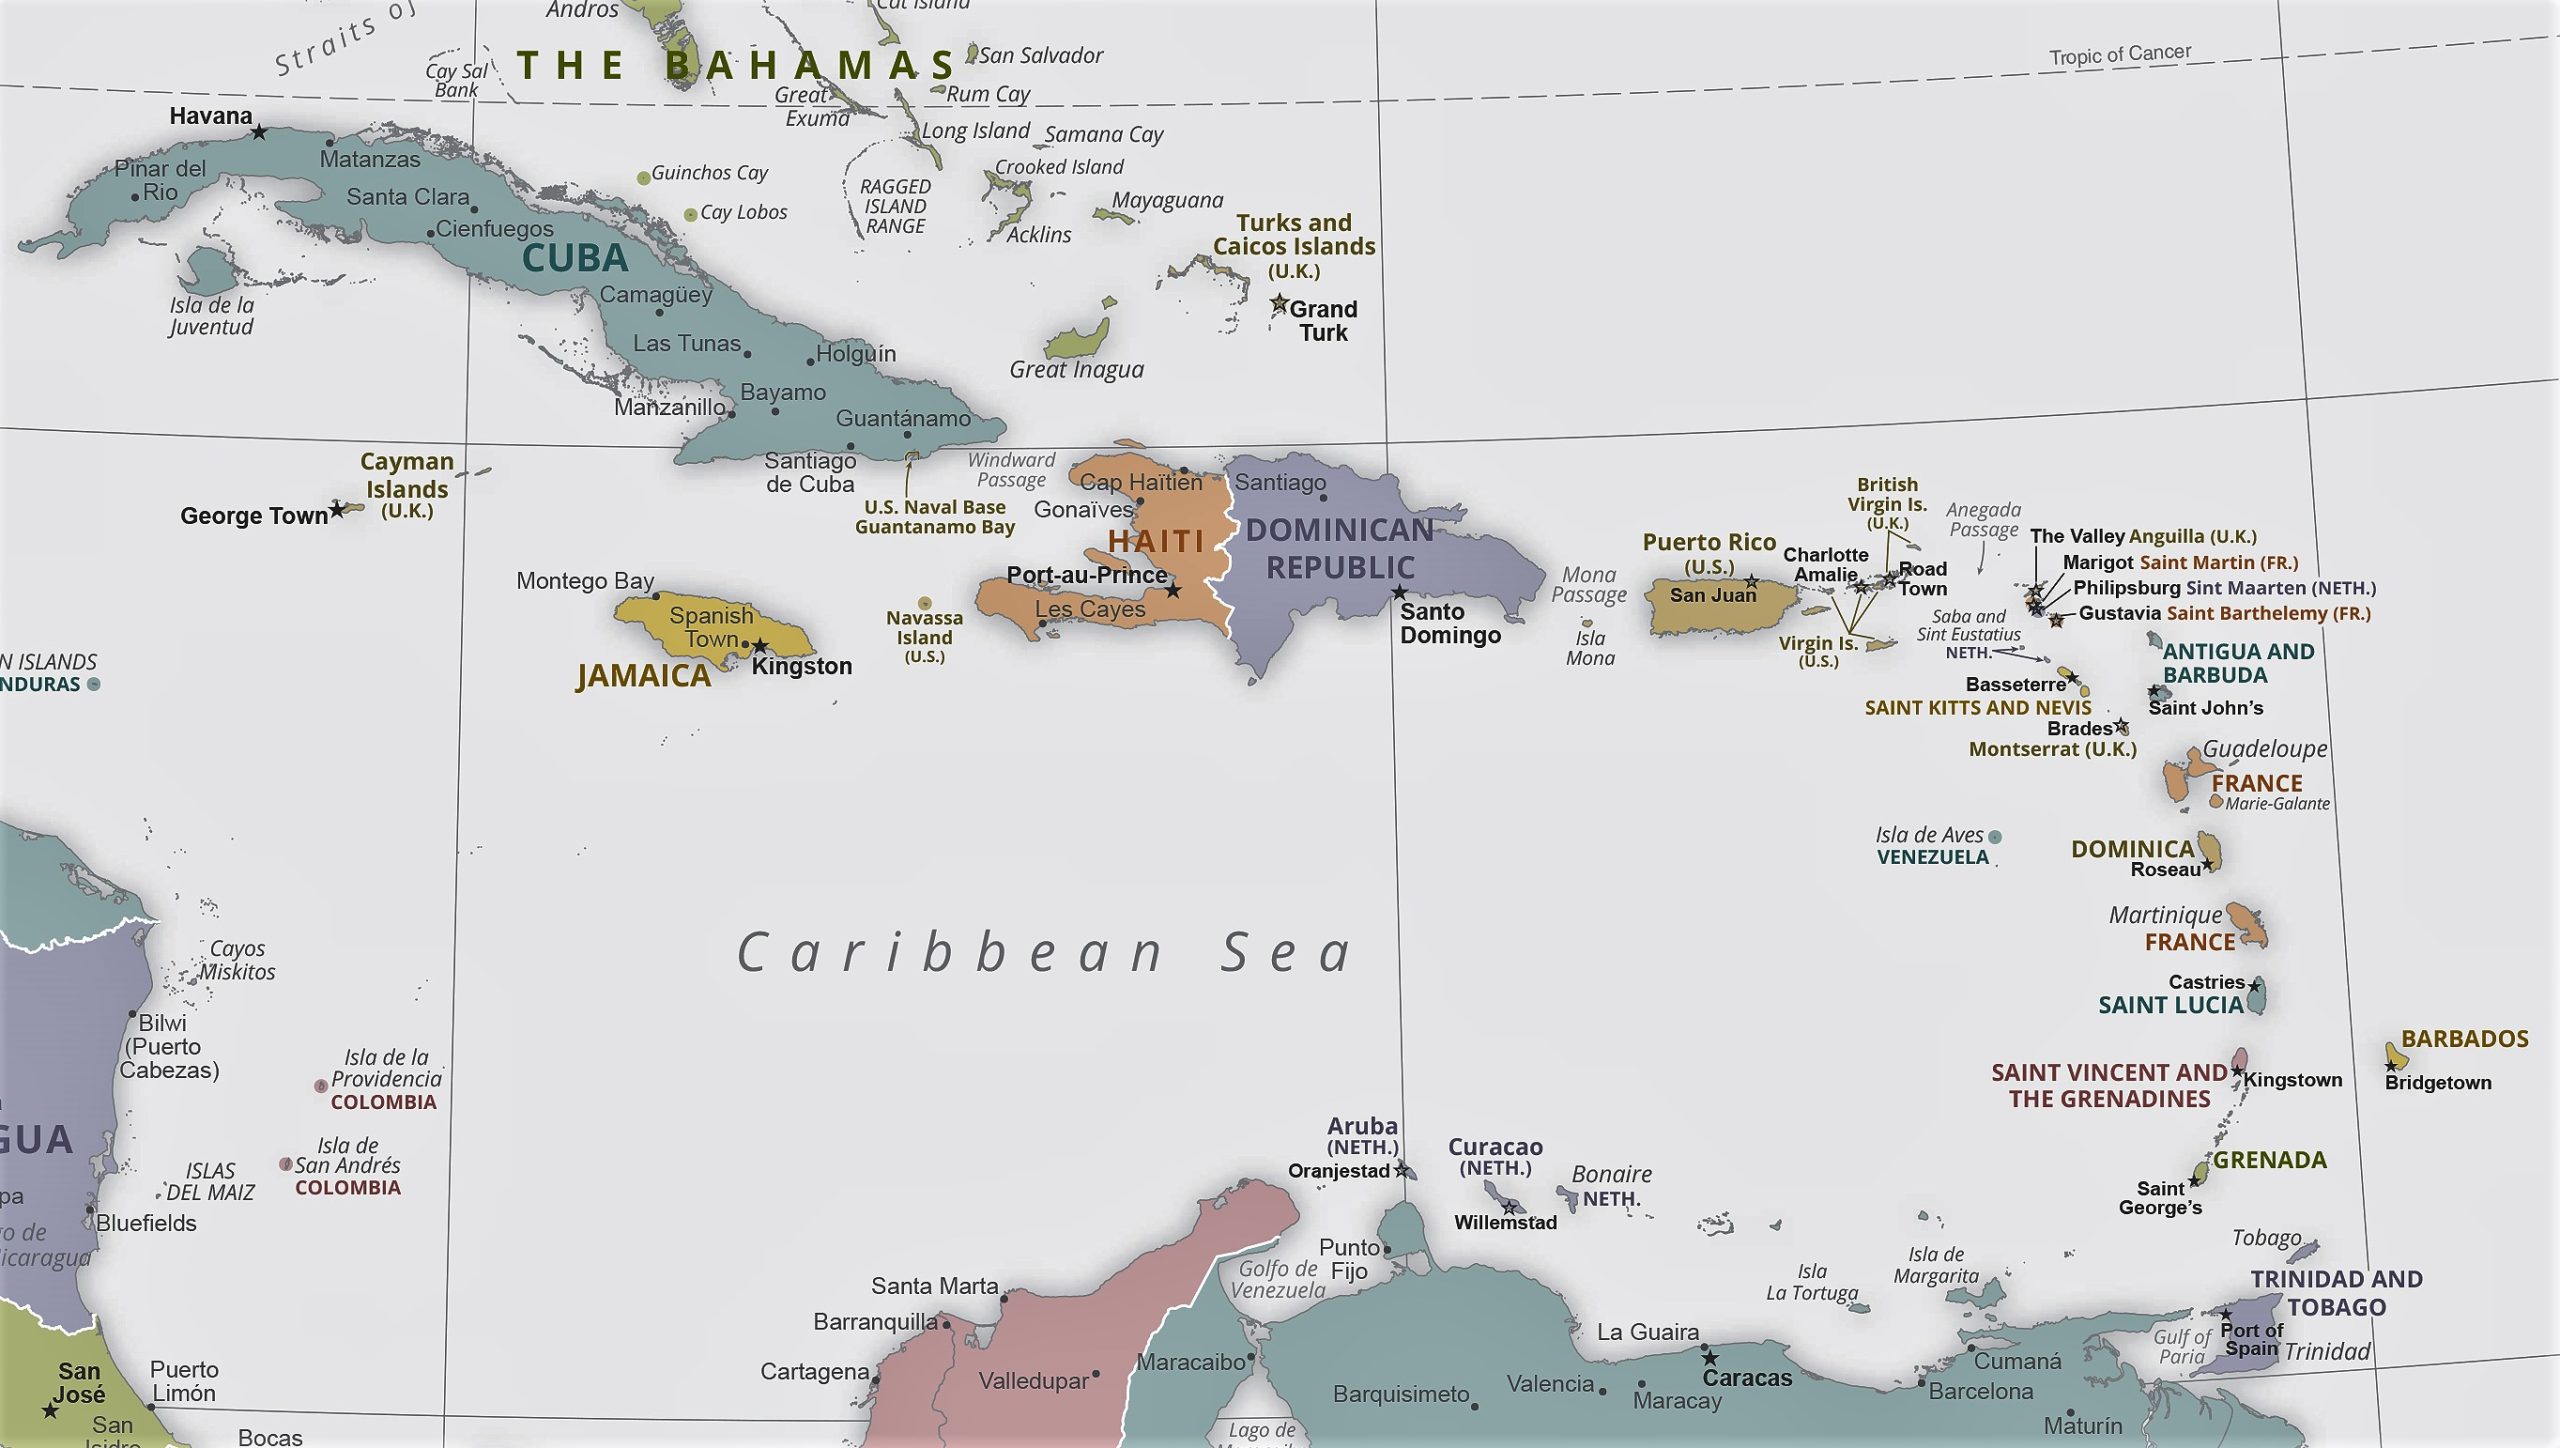 Situação ameaçadora no Caribe: mudança climática e disputa entre grandes potências